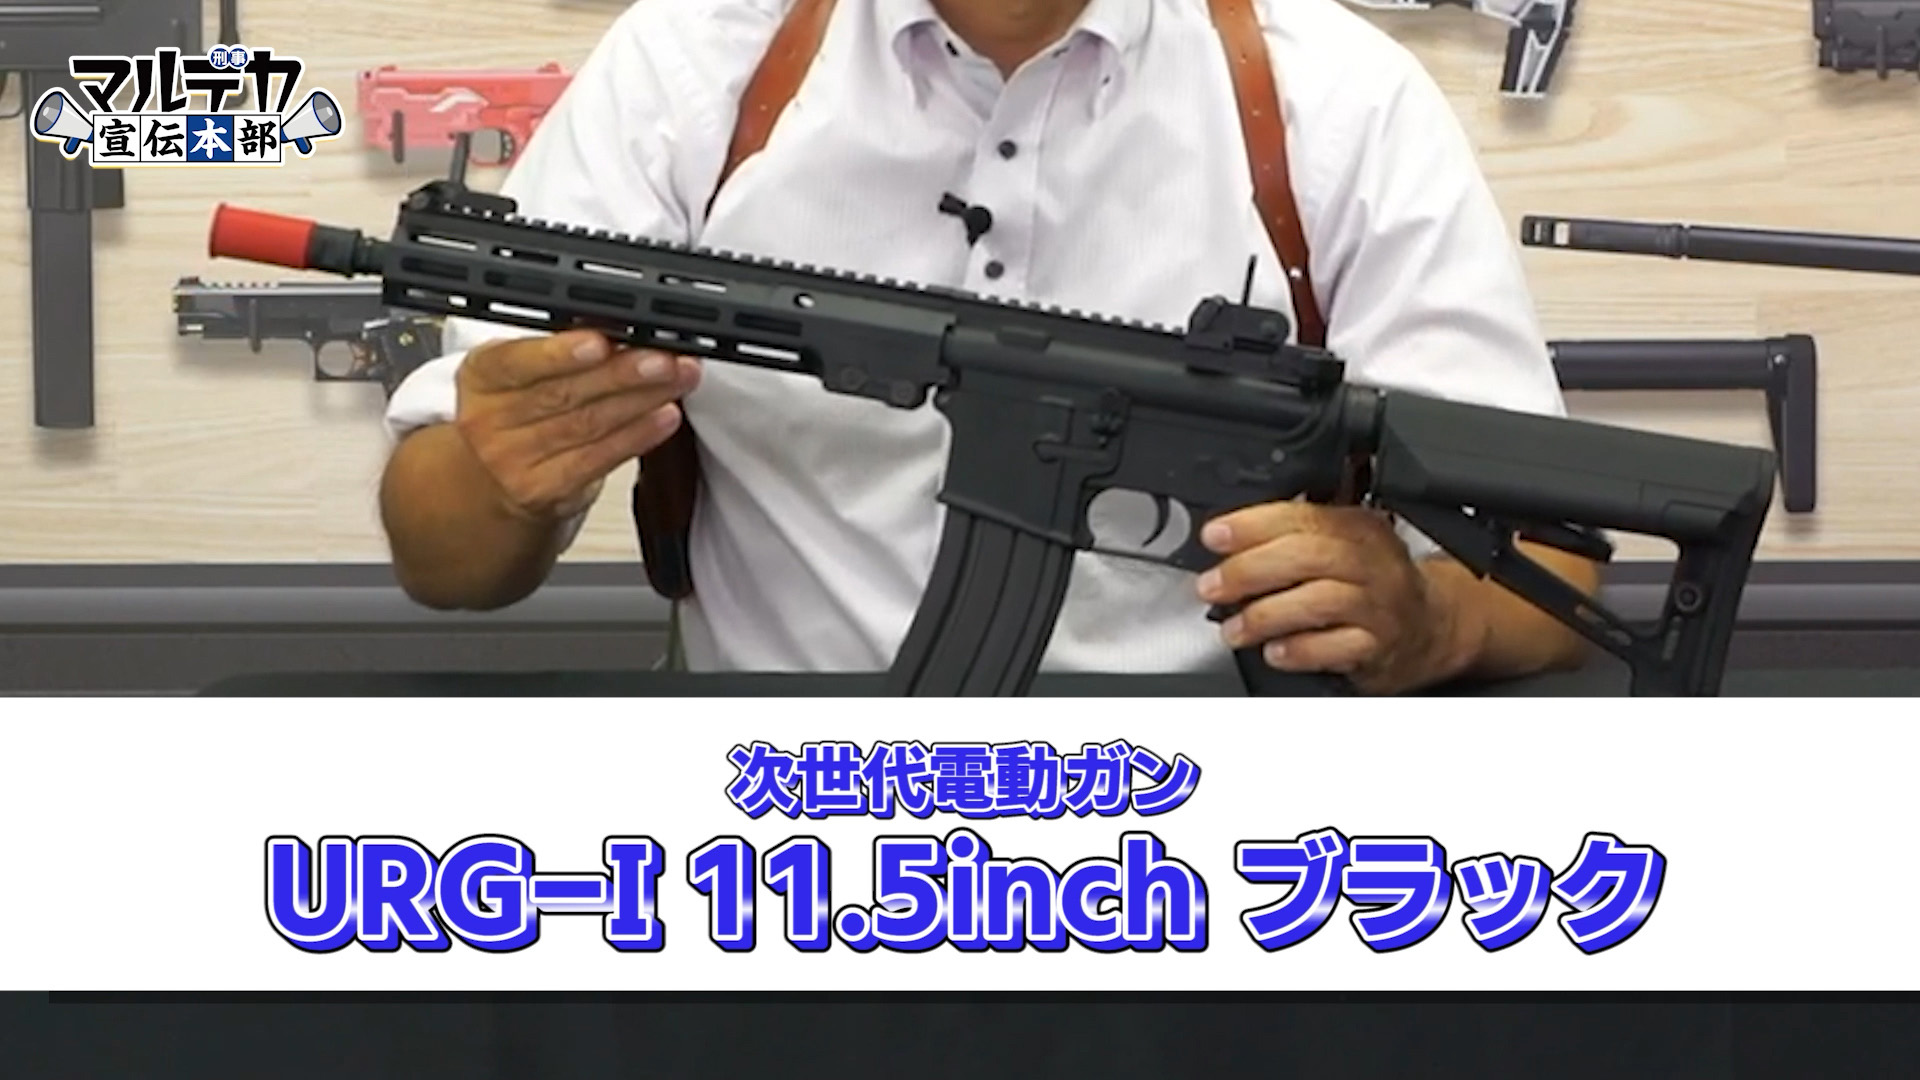 東京マルイ、次世代電動ガン「URG-I 11.5inch ブラック」を発表